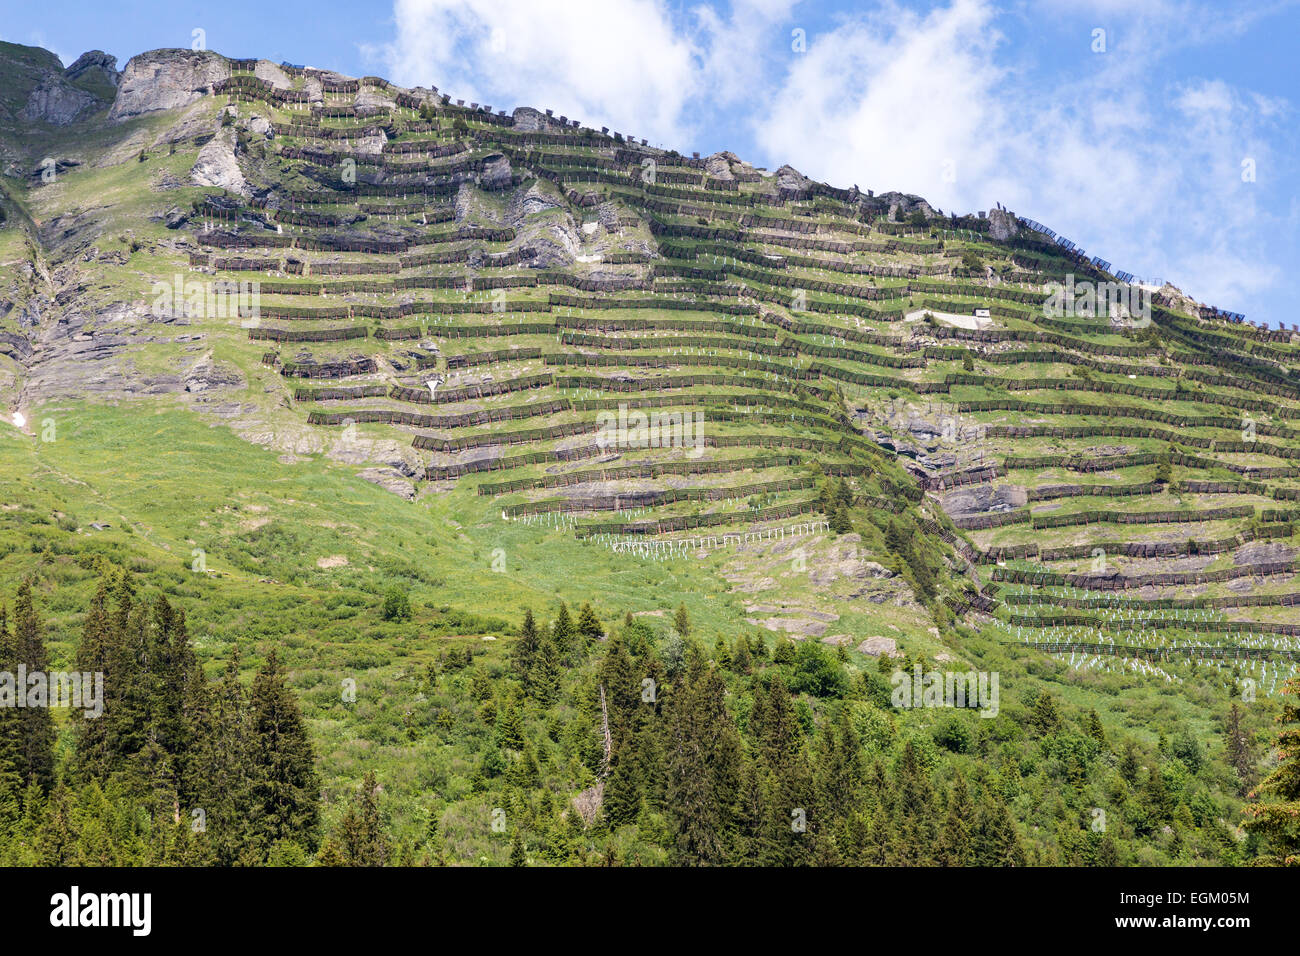 Holzzäune Schnee oder Lawinen Zäune säumen die steilen Hänge des Bergrücken in den Schweizer Alpen in der Nähe von Mürren, Schweiz. Stockfoto